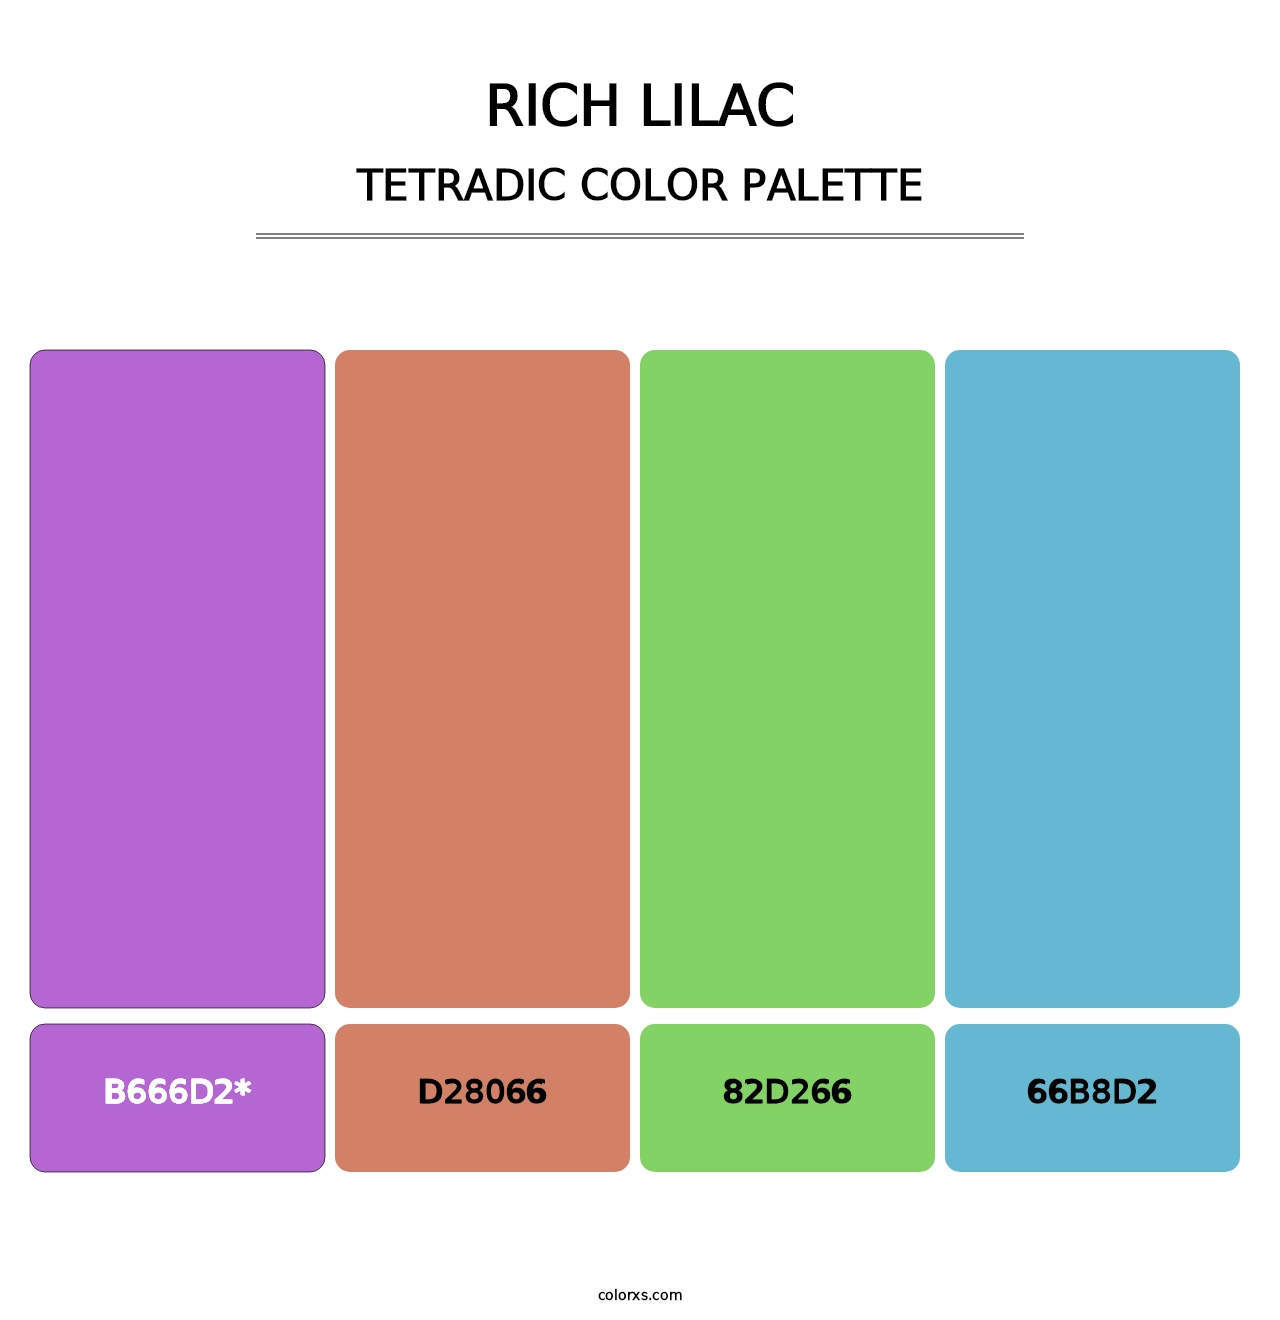 Rich Lilac - Tetradic Color Palette